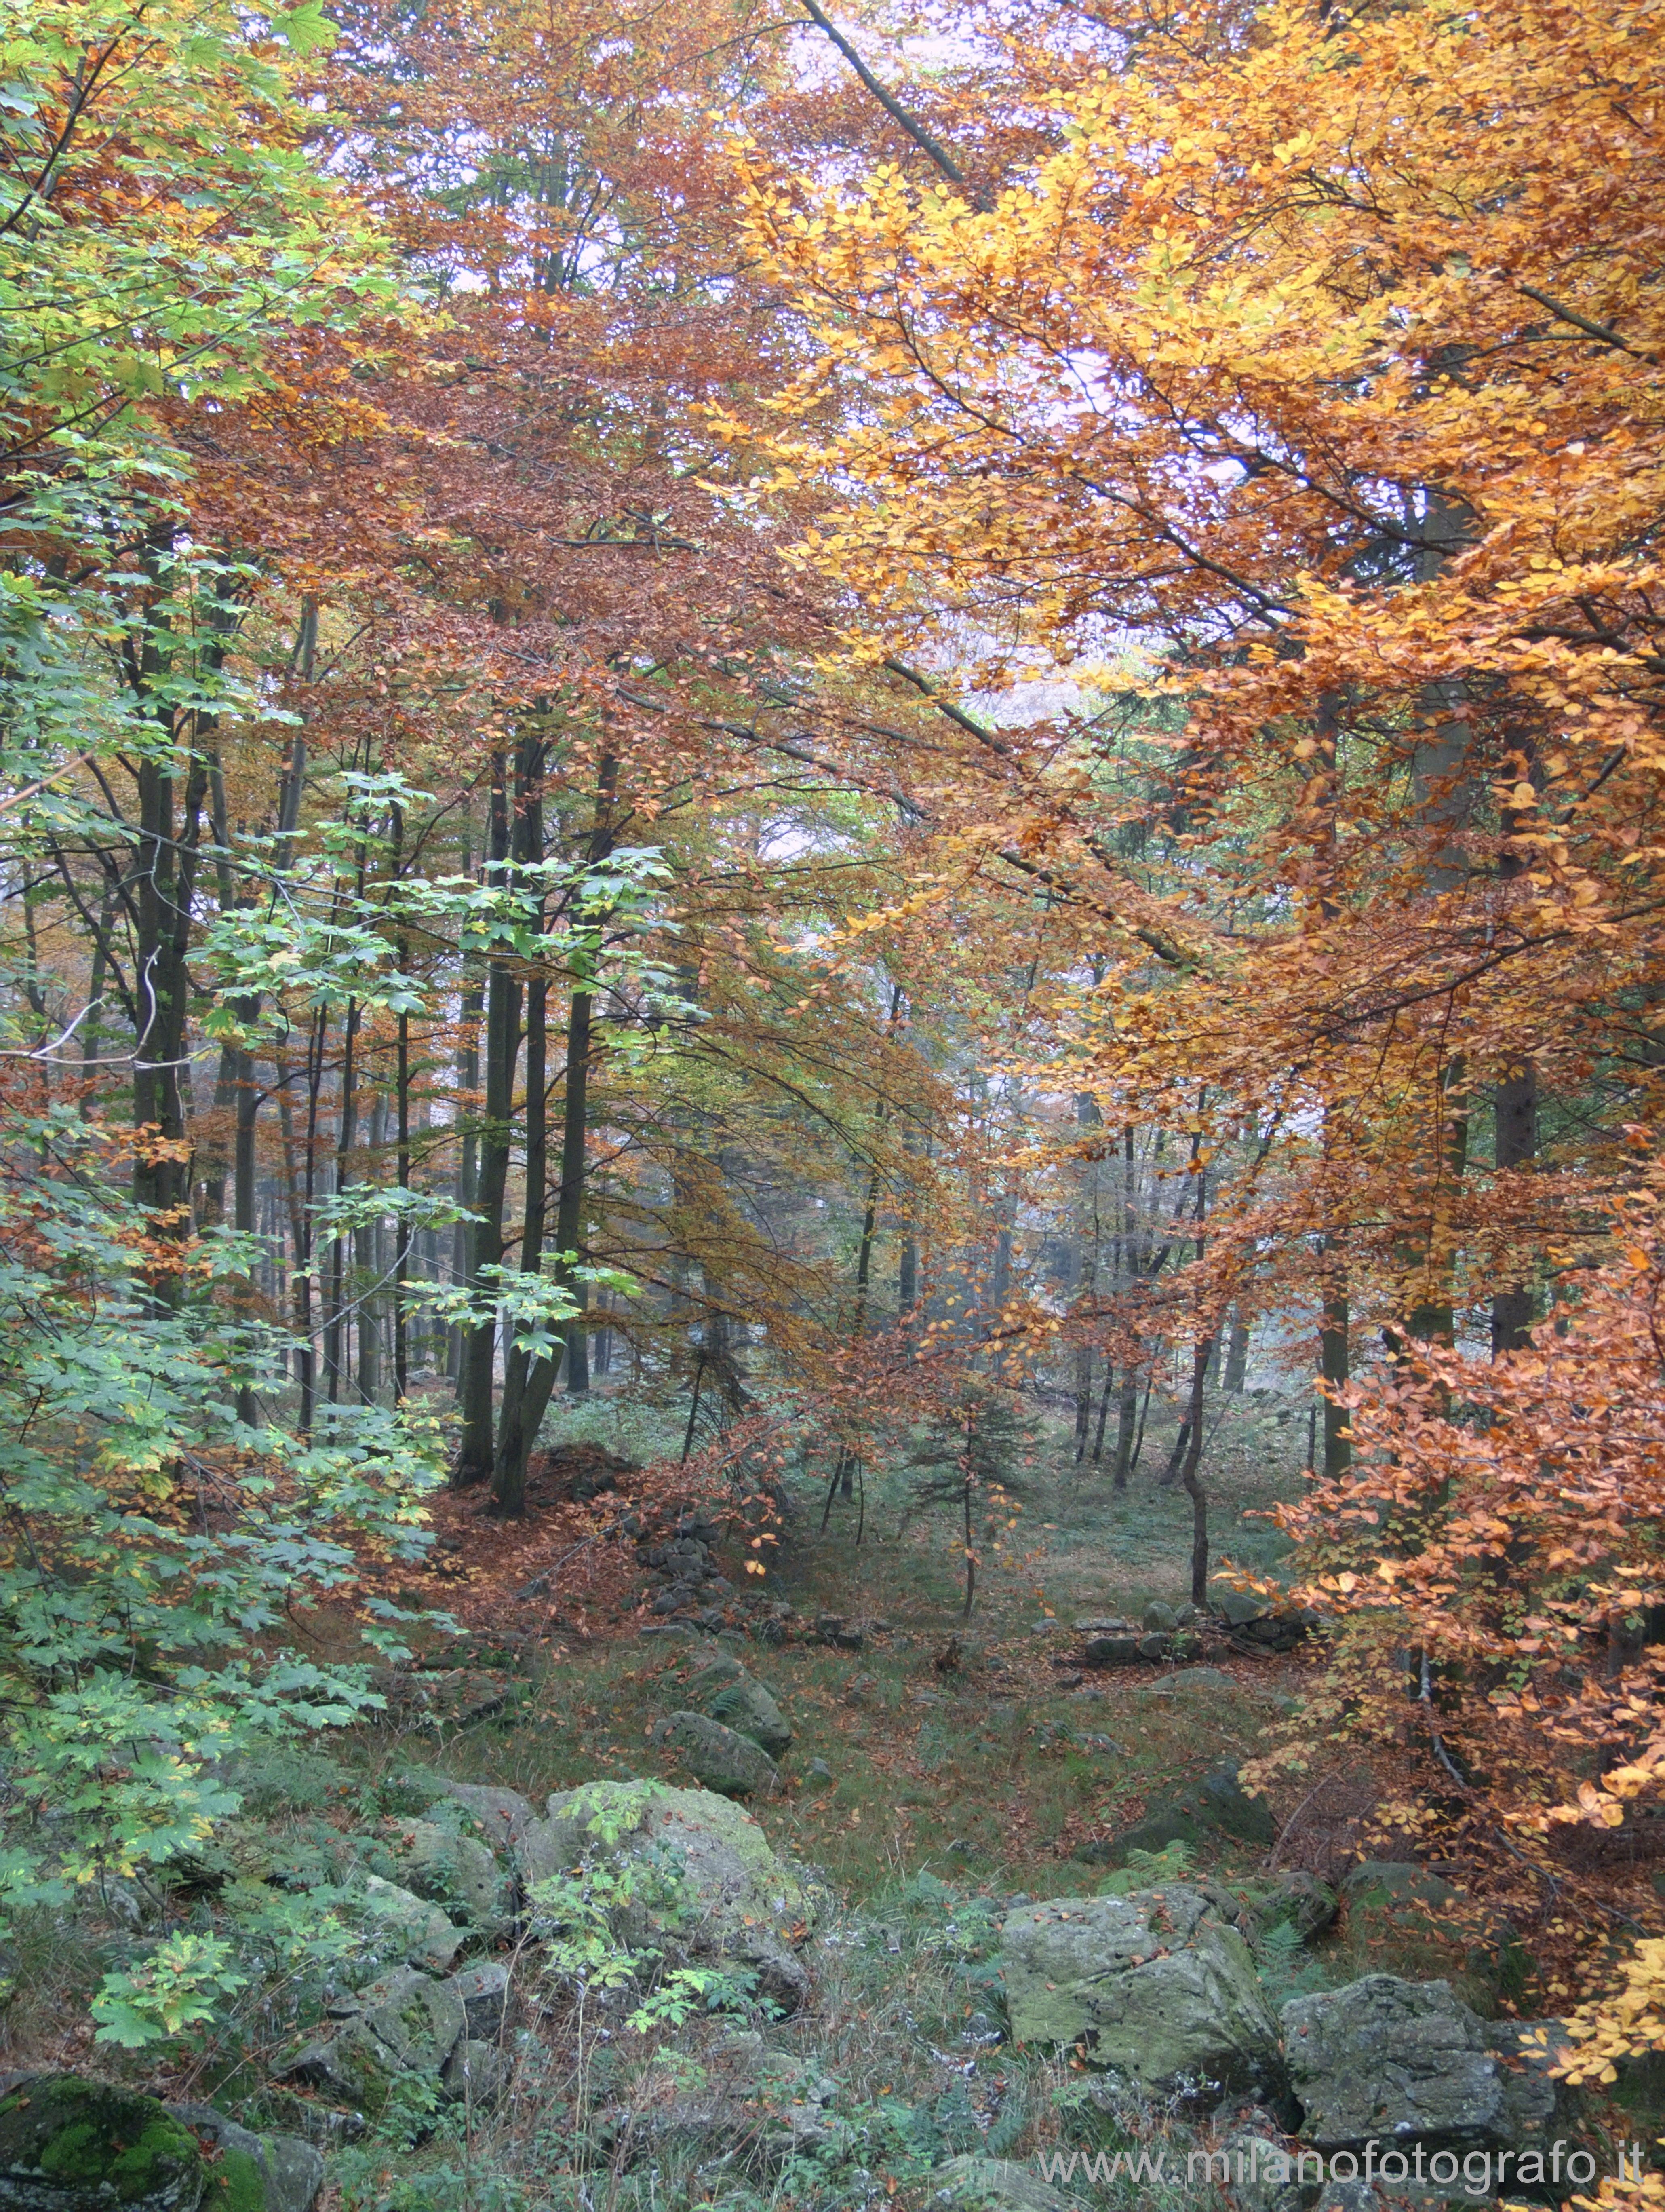 Biella, Italy: Autumn woods above the Sanctuary of Oropa - Biella, Italy